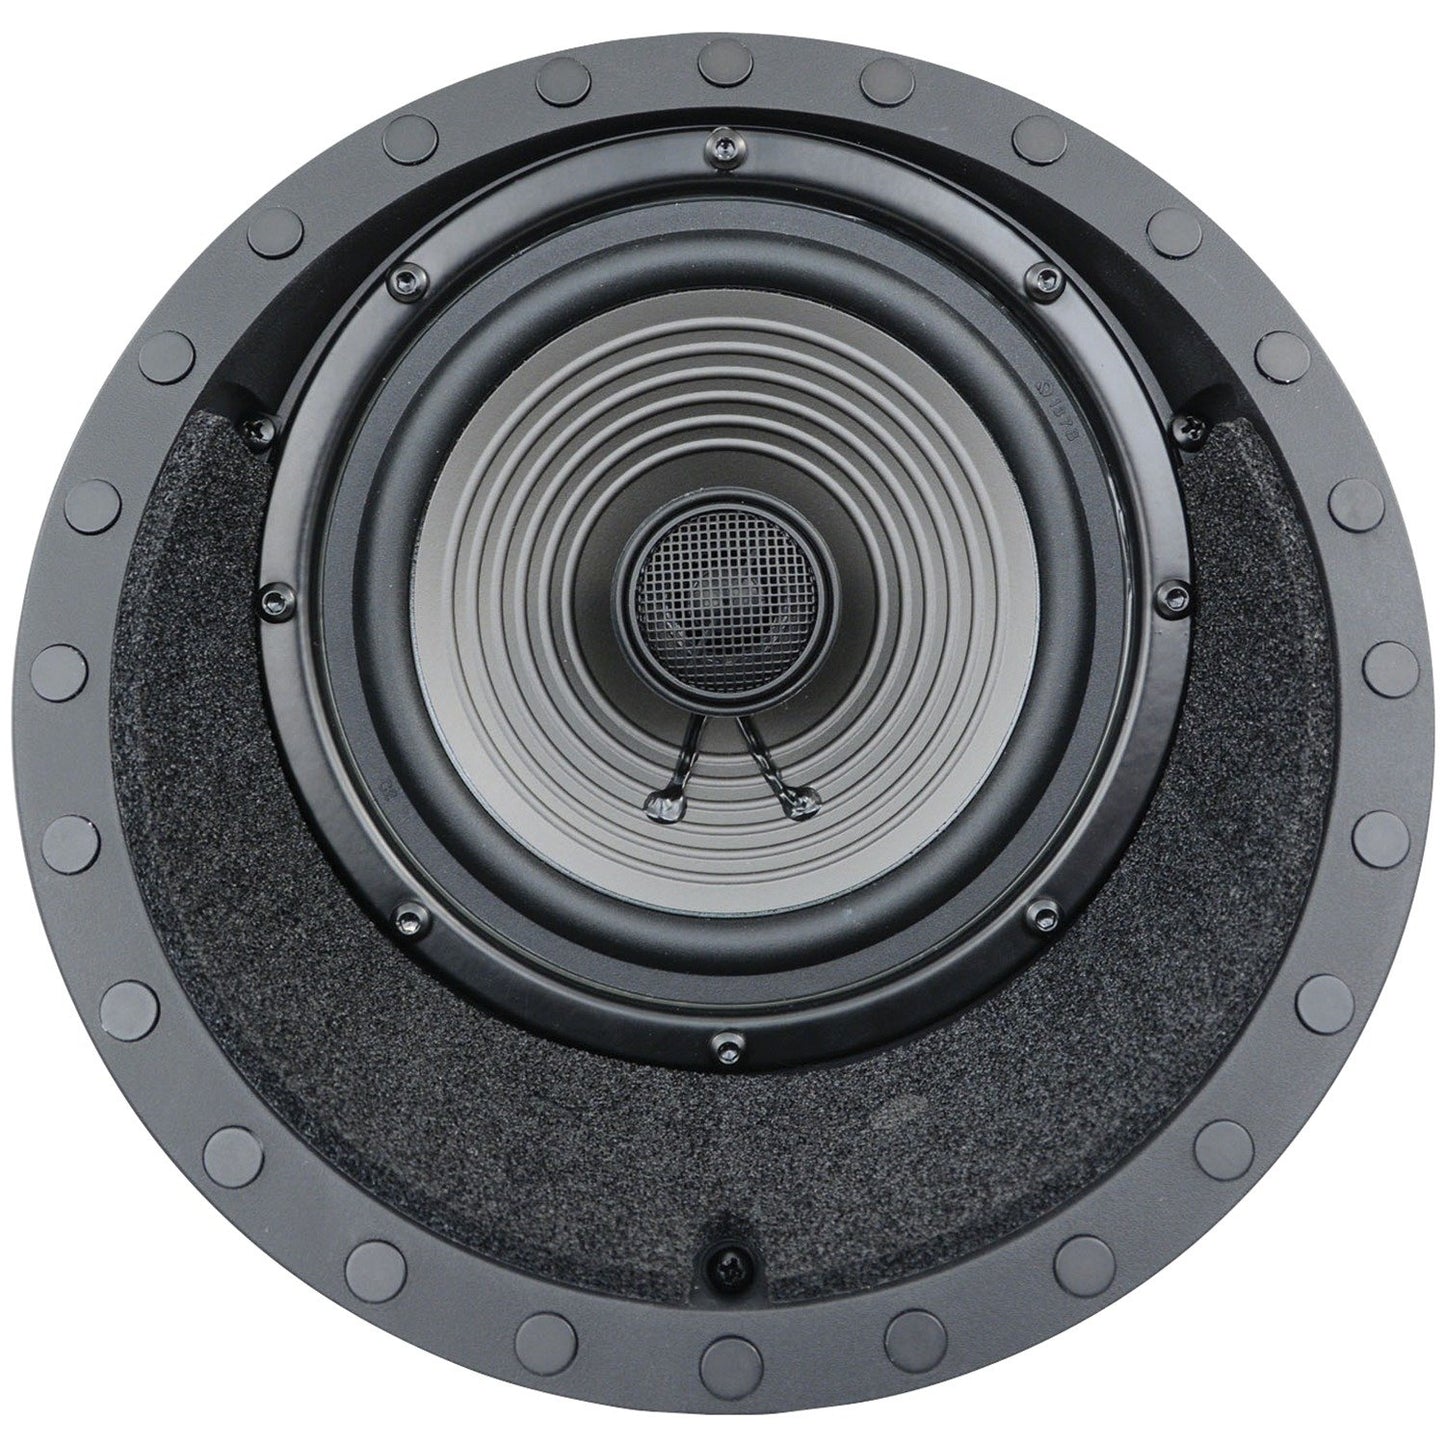 Architech AP-615 LCRS 2-Way In-Ceiling LCR Loudspeaker 6.5", 50-100W